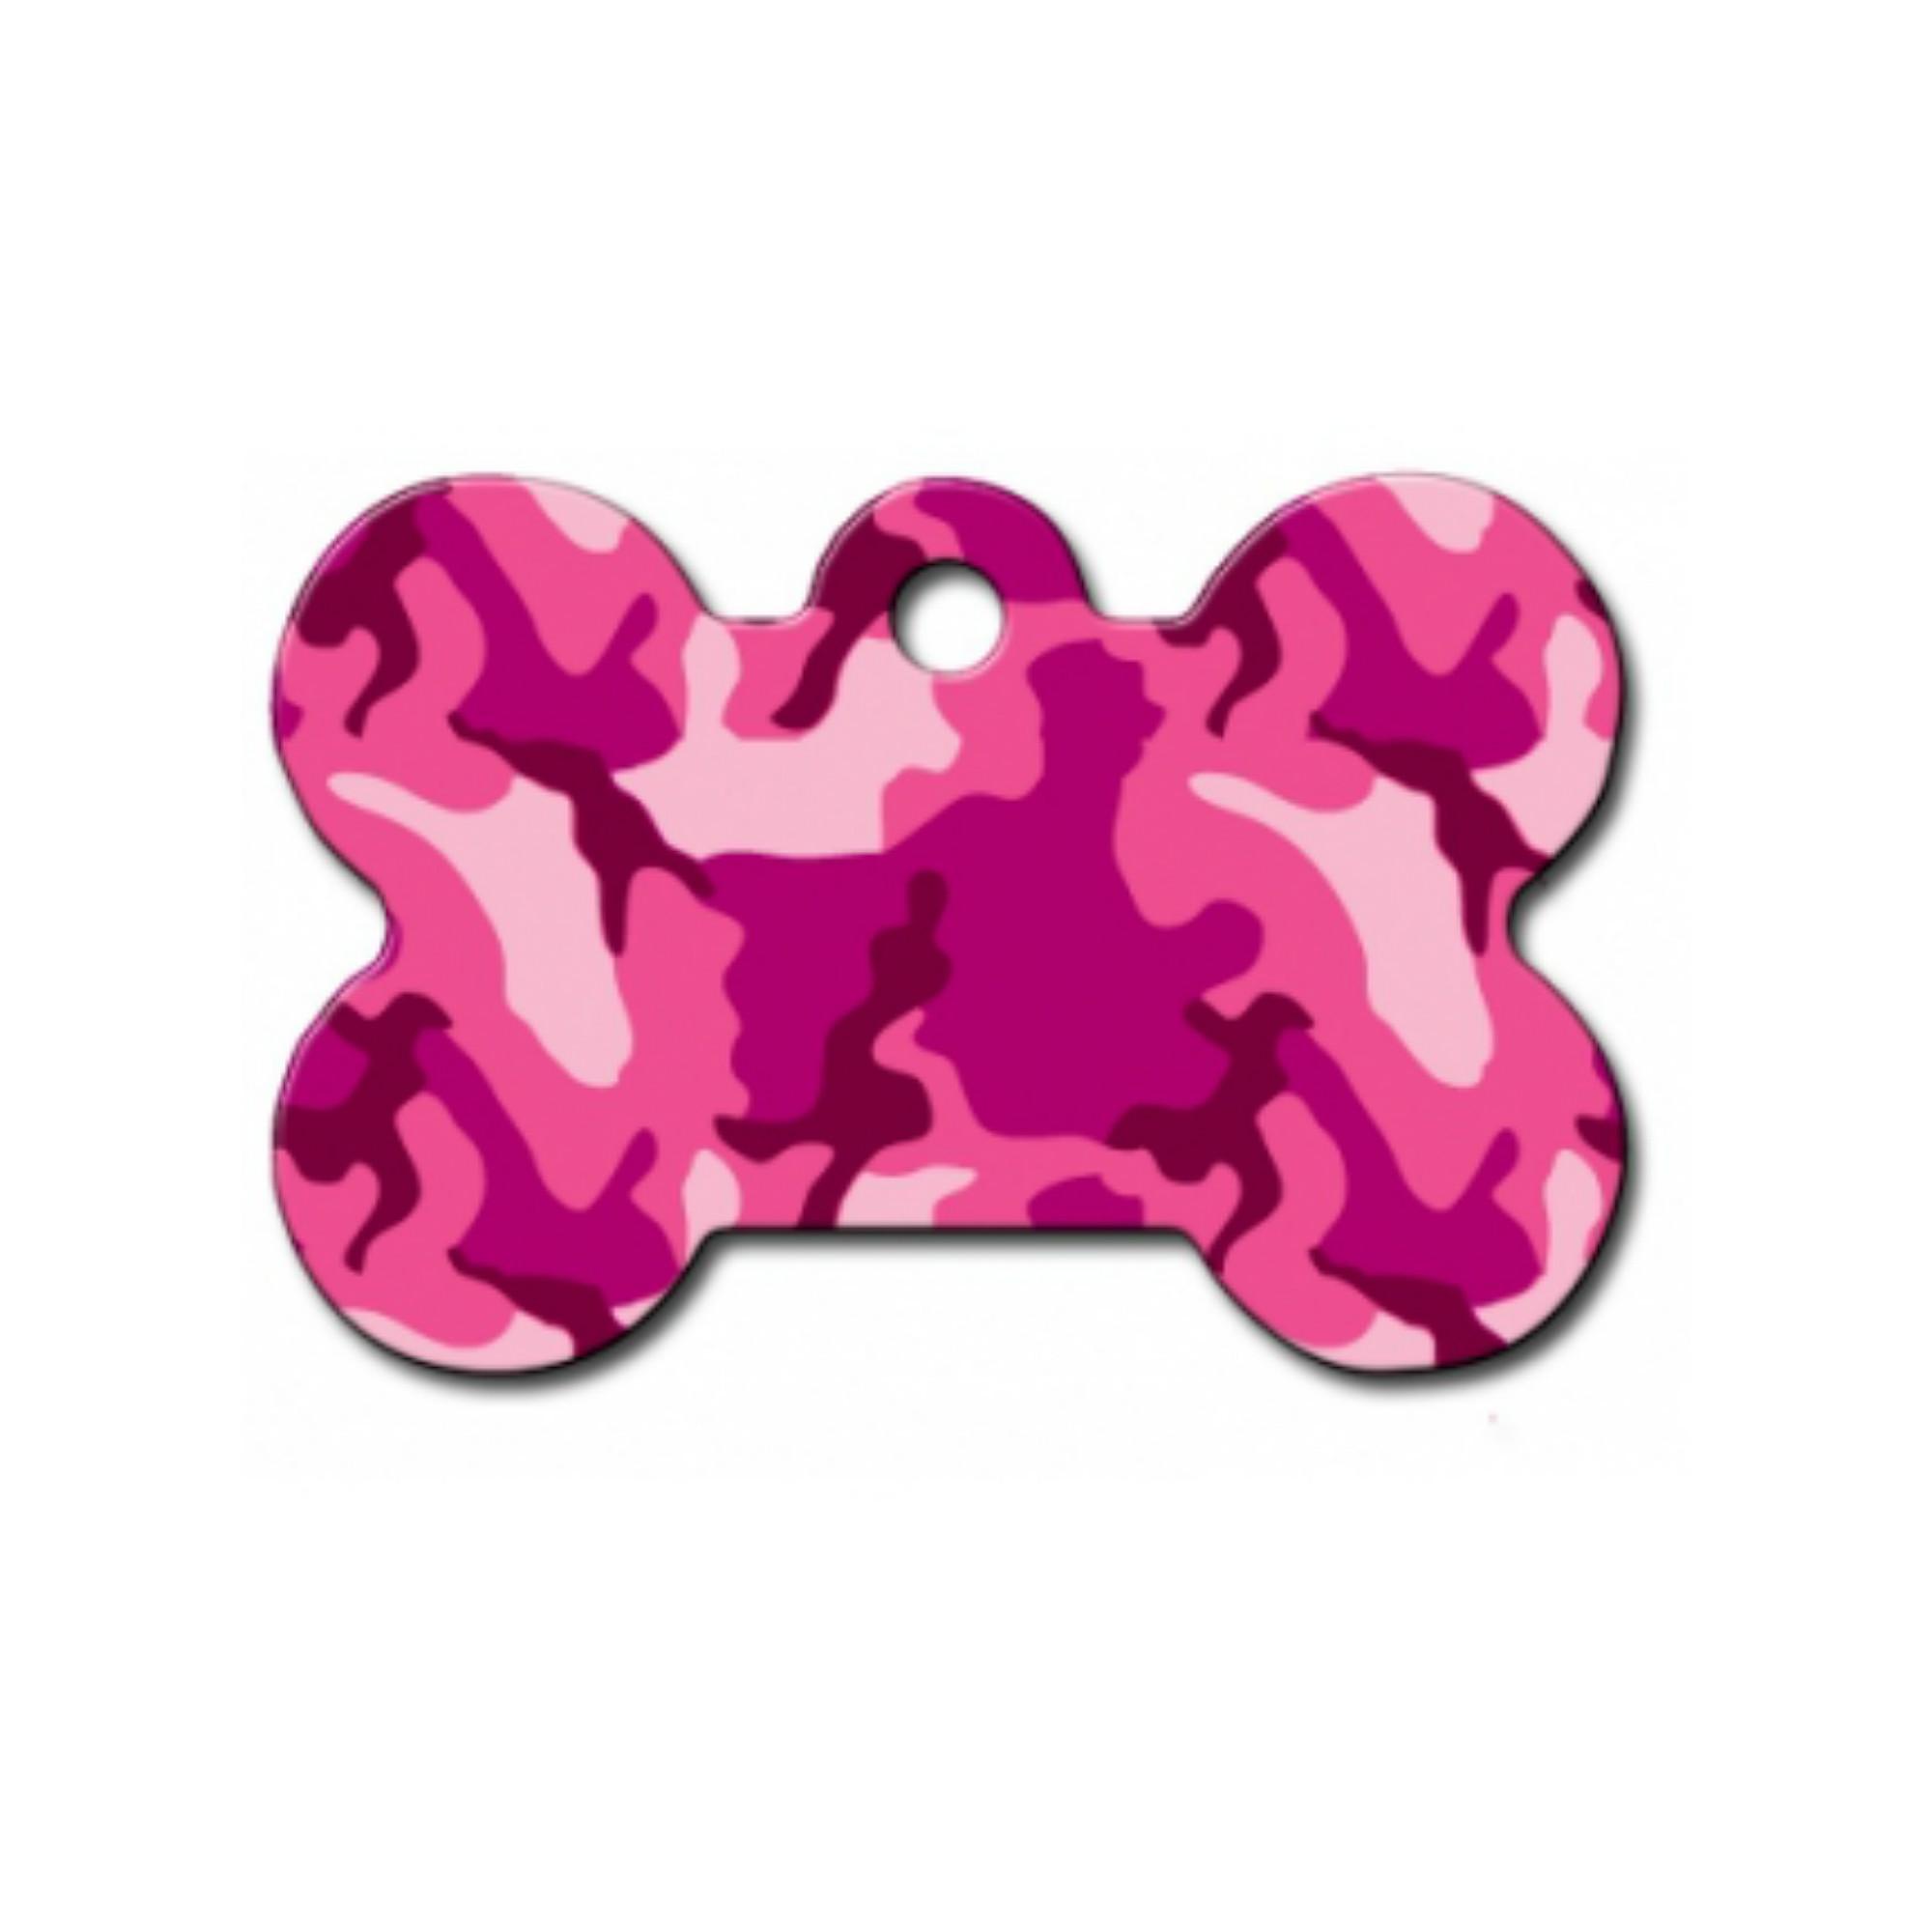 Bone Small Engravable Pet I.D. Tag - Pink Camo